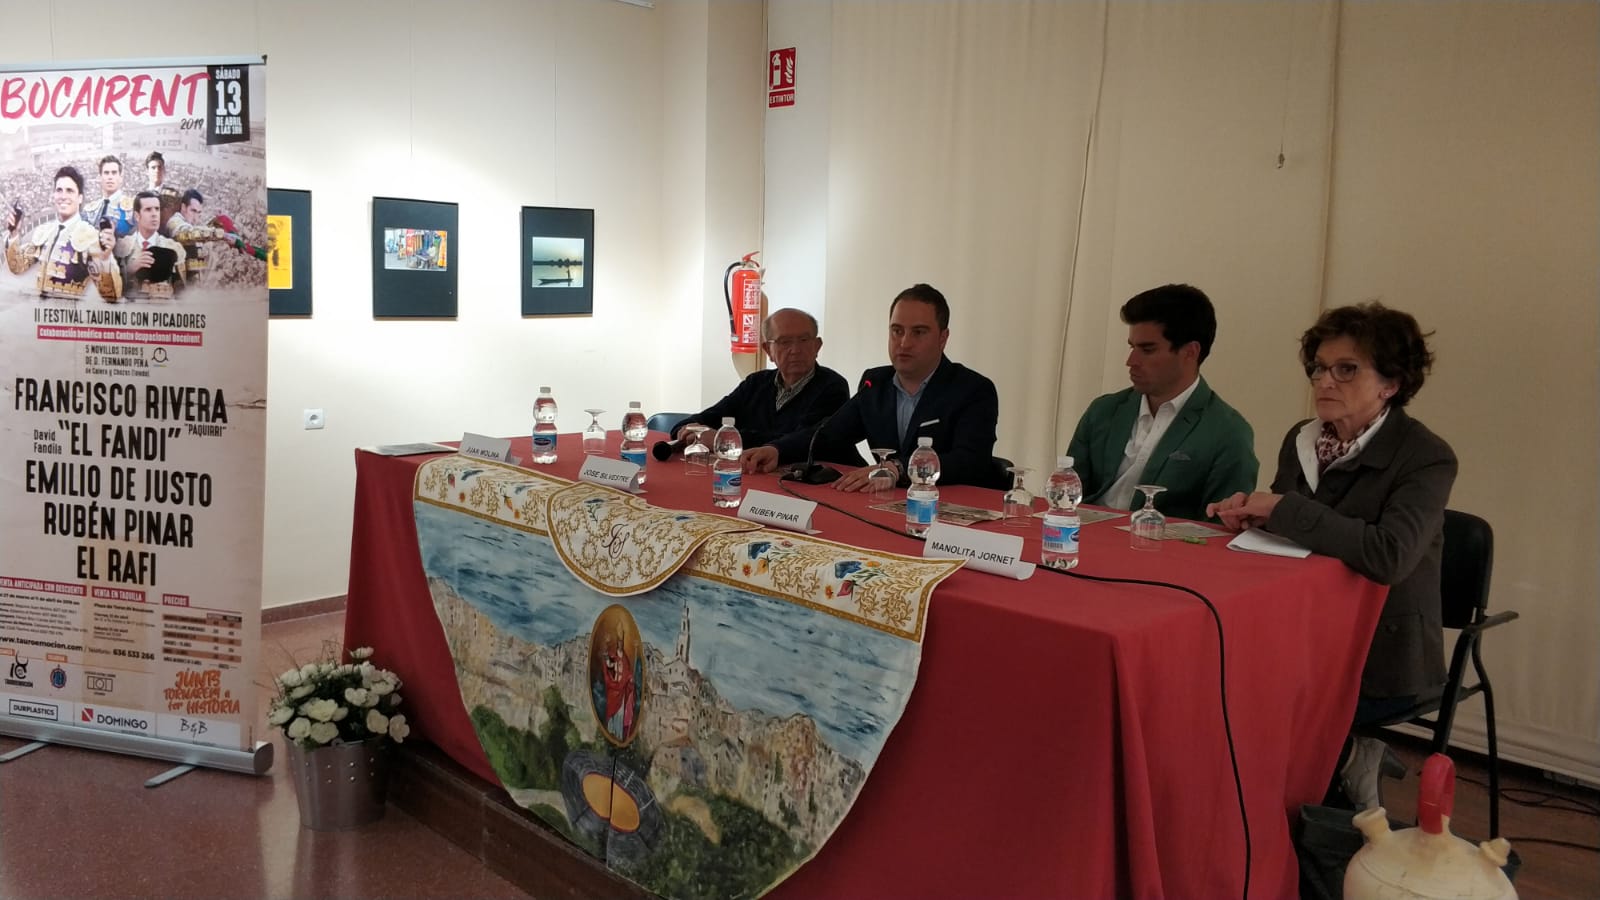 Presentación del festival taurino Bocairent